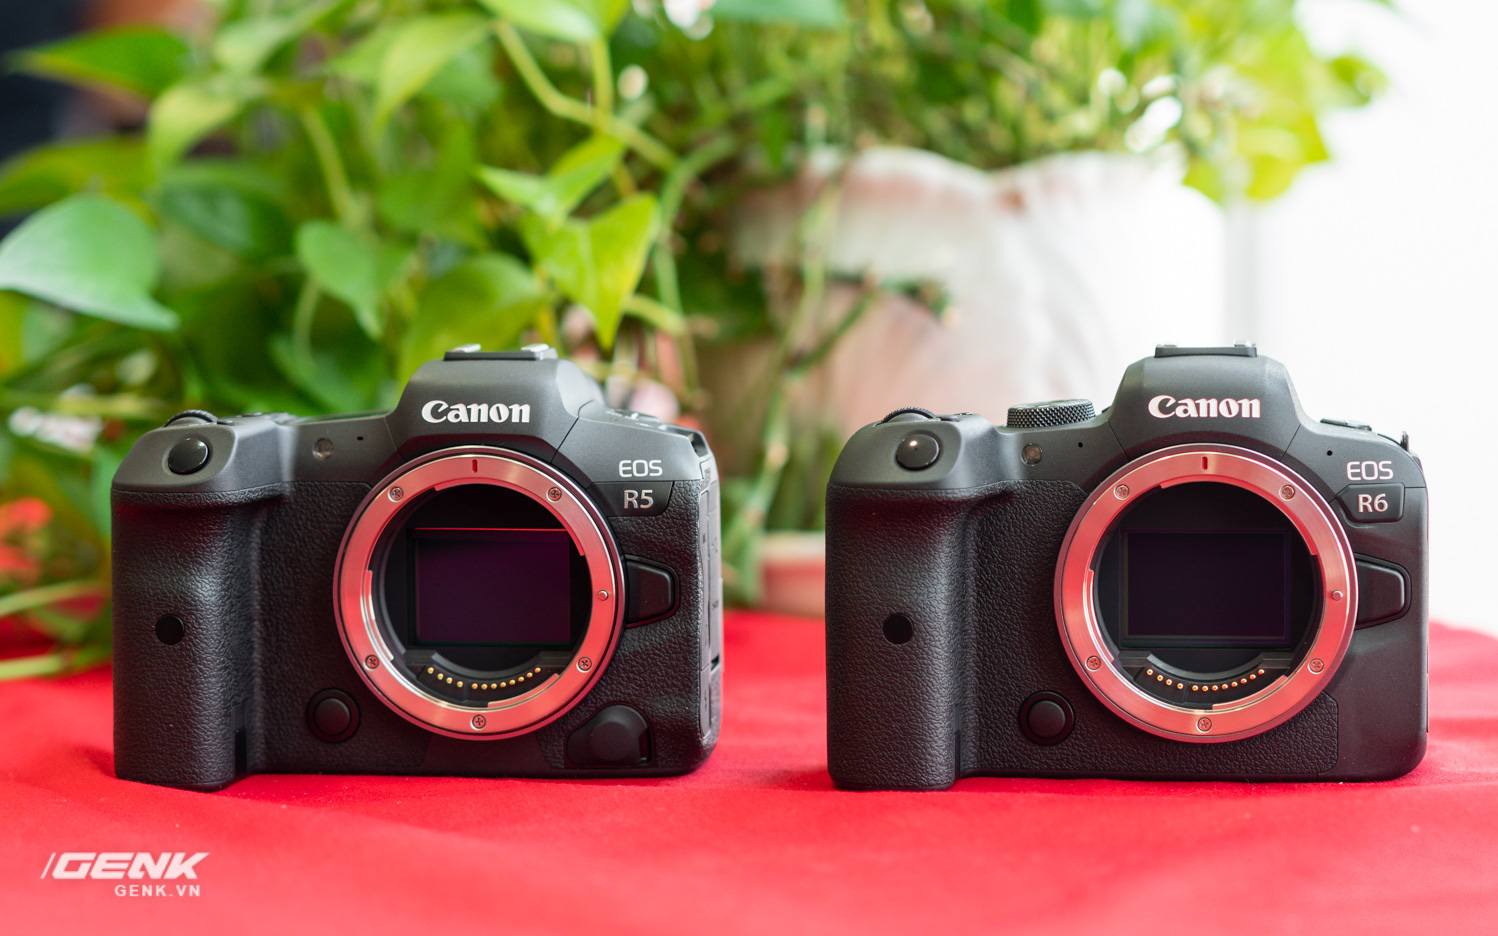 Trên tay bộ đôi máy ảnh Canon EOS R5 và R6: Cấu hình video mạnh mẽ, giá khá cao